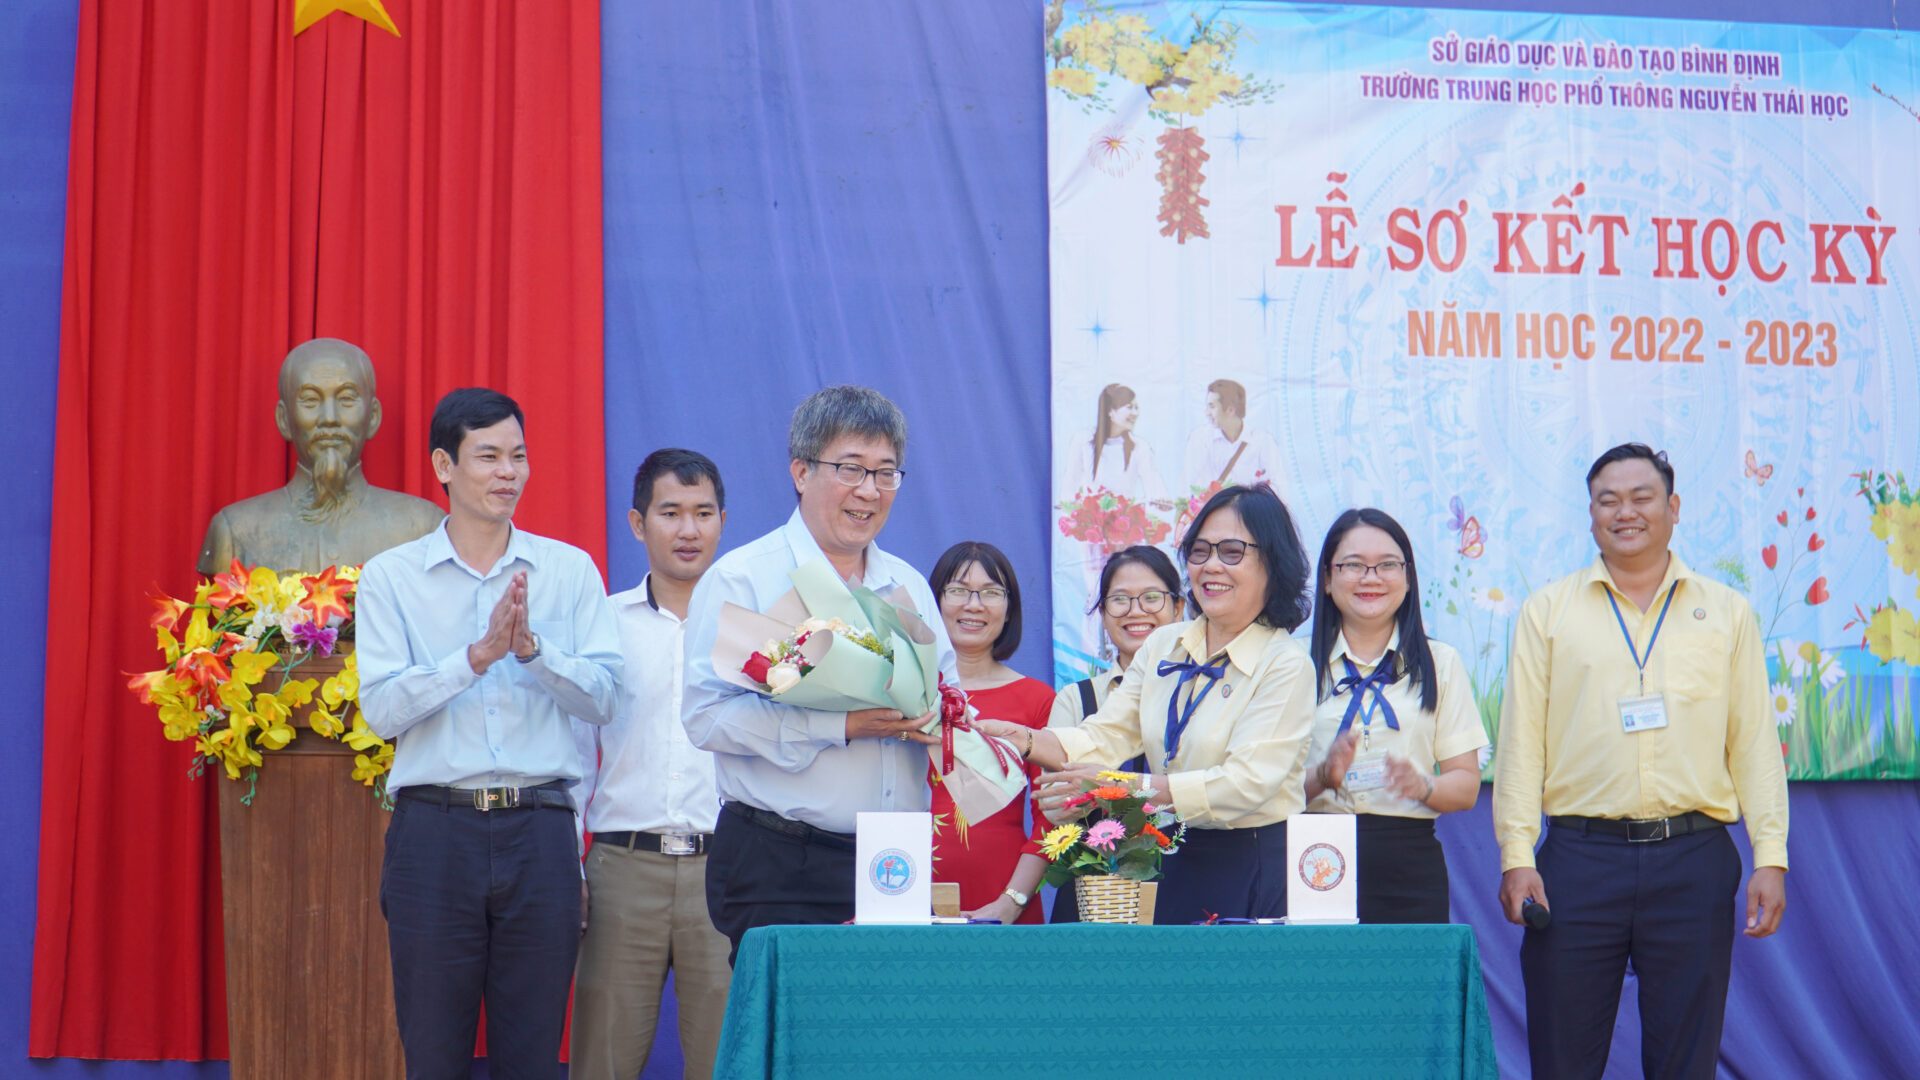 Game đánh bài Liêng
 kết nghĩa với Trường THPT Nguyễn Thái Học (Quy Nhơn)